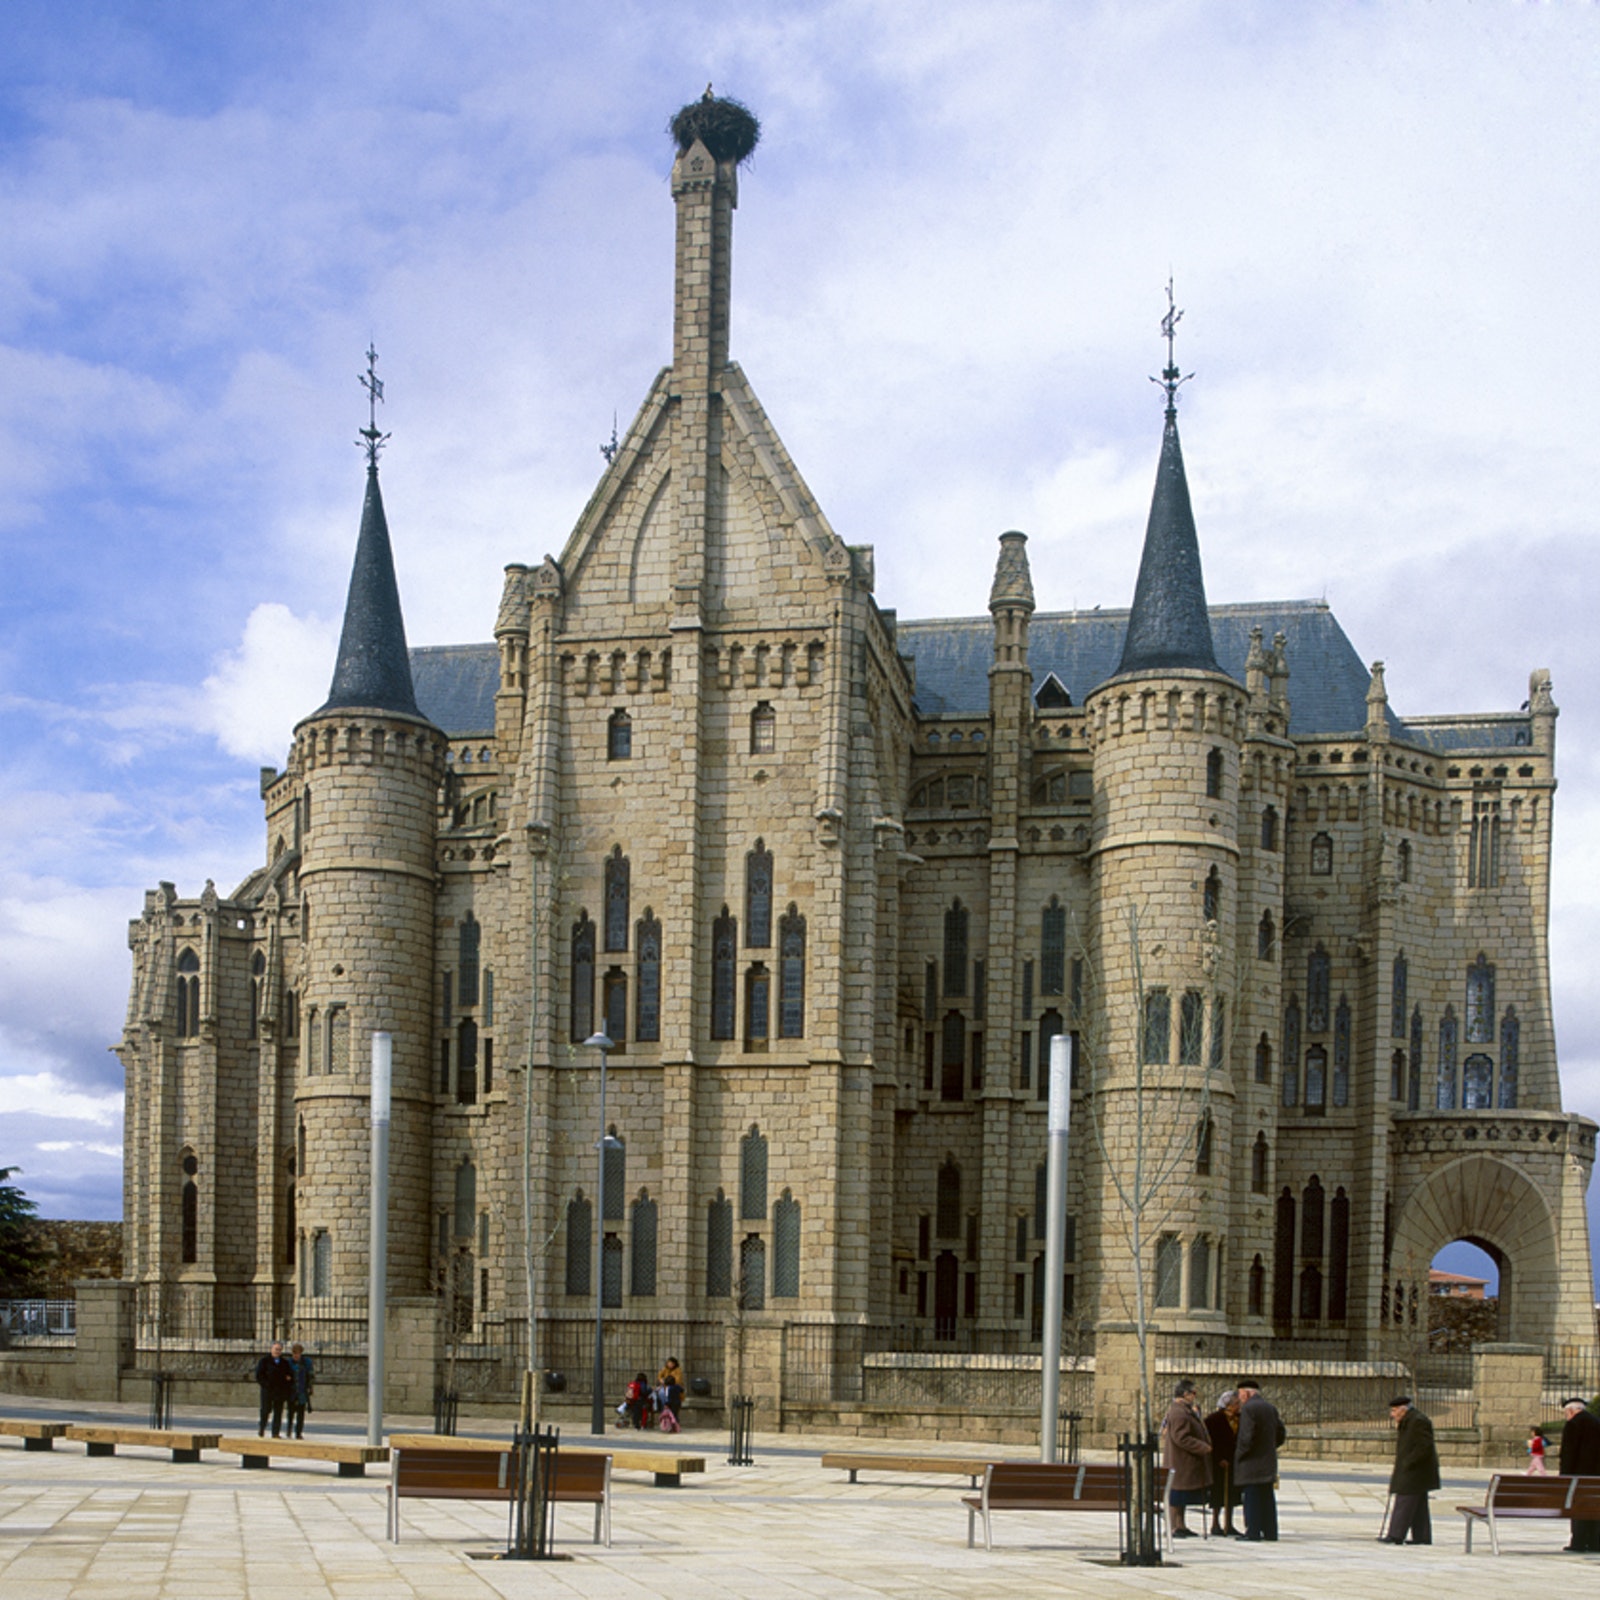 Palacio de Gaudí: General Admission in Spain